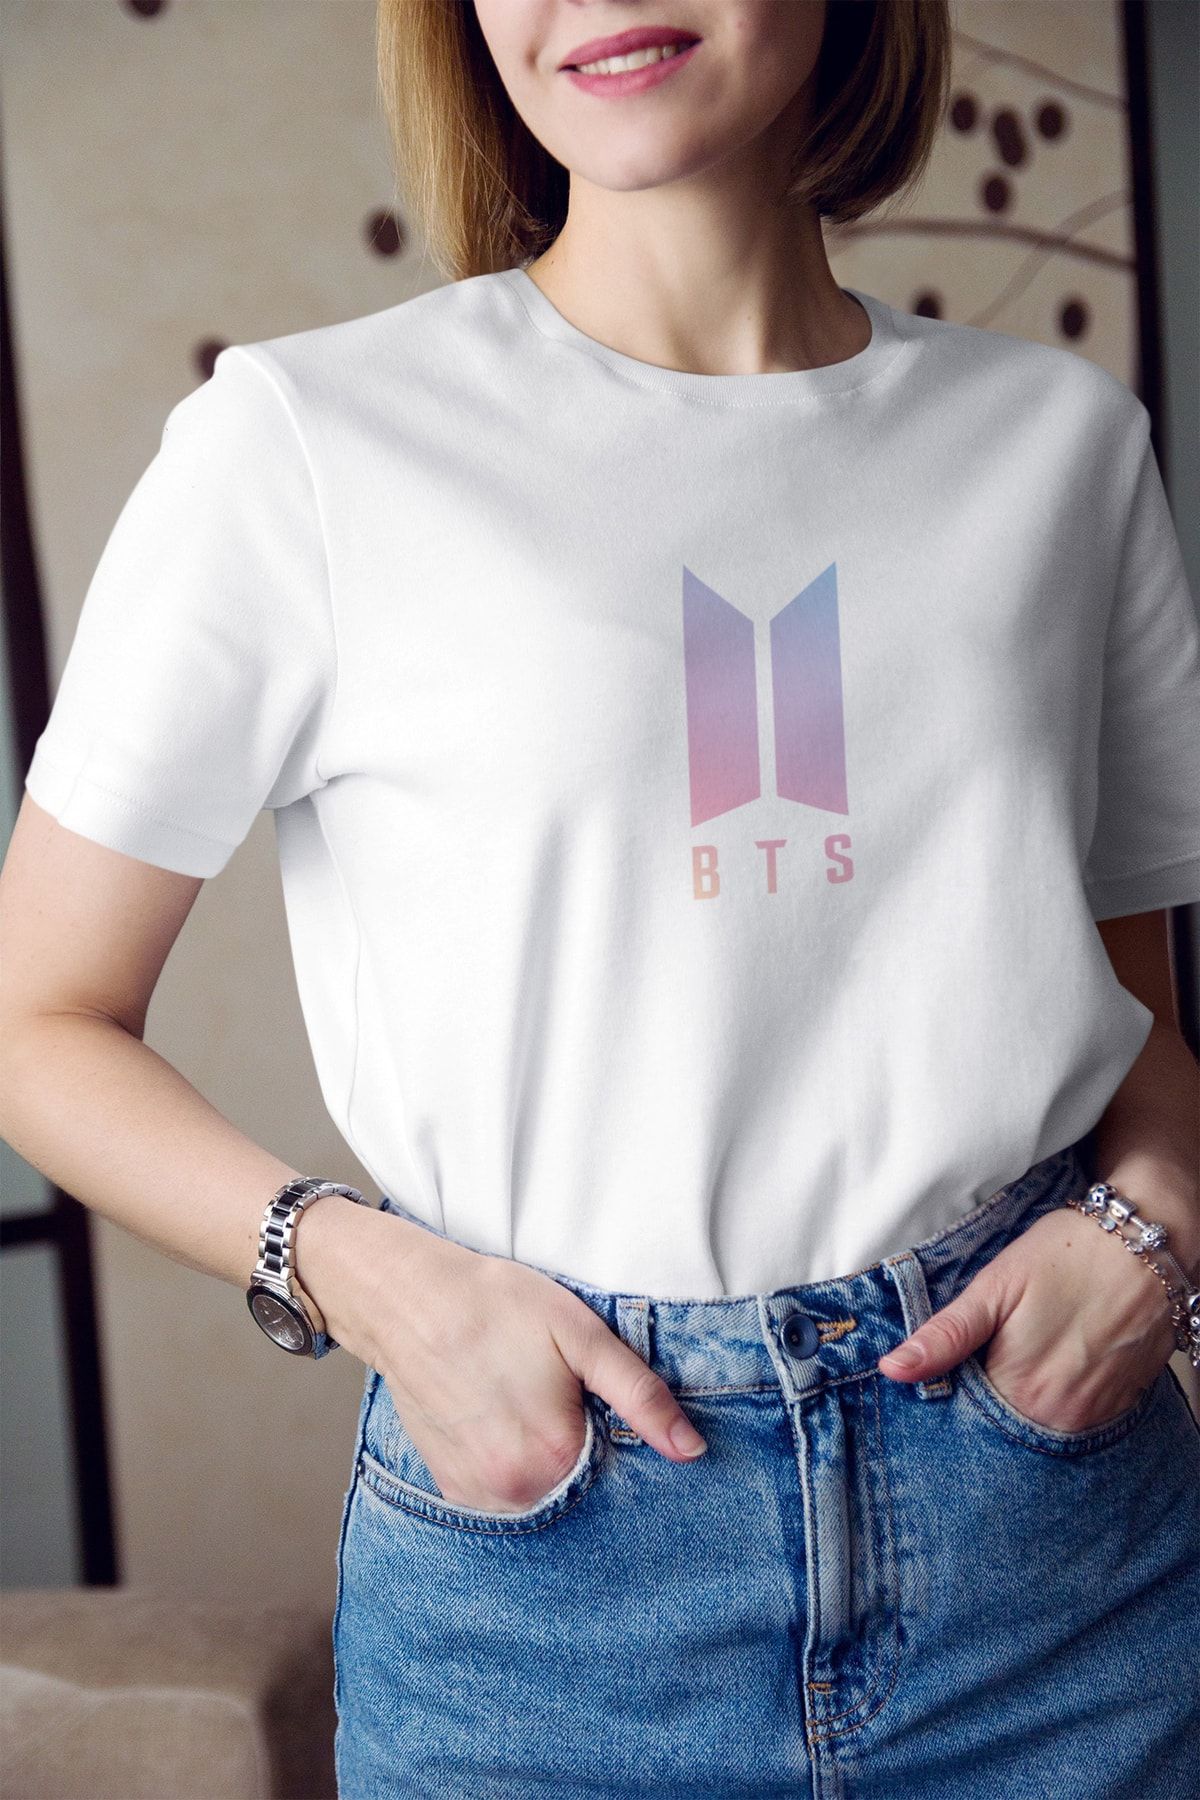 Kio Tasarım Kadın Bts Müzik Grubu Logo Baskılı T-Shirt